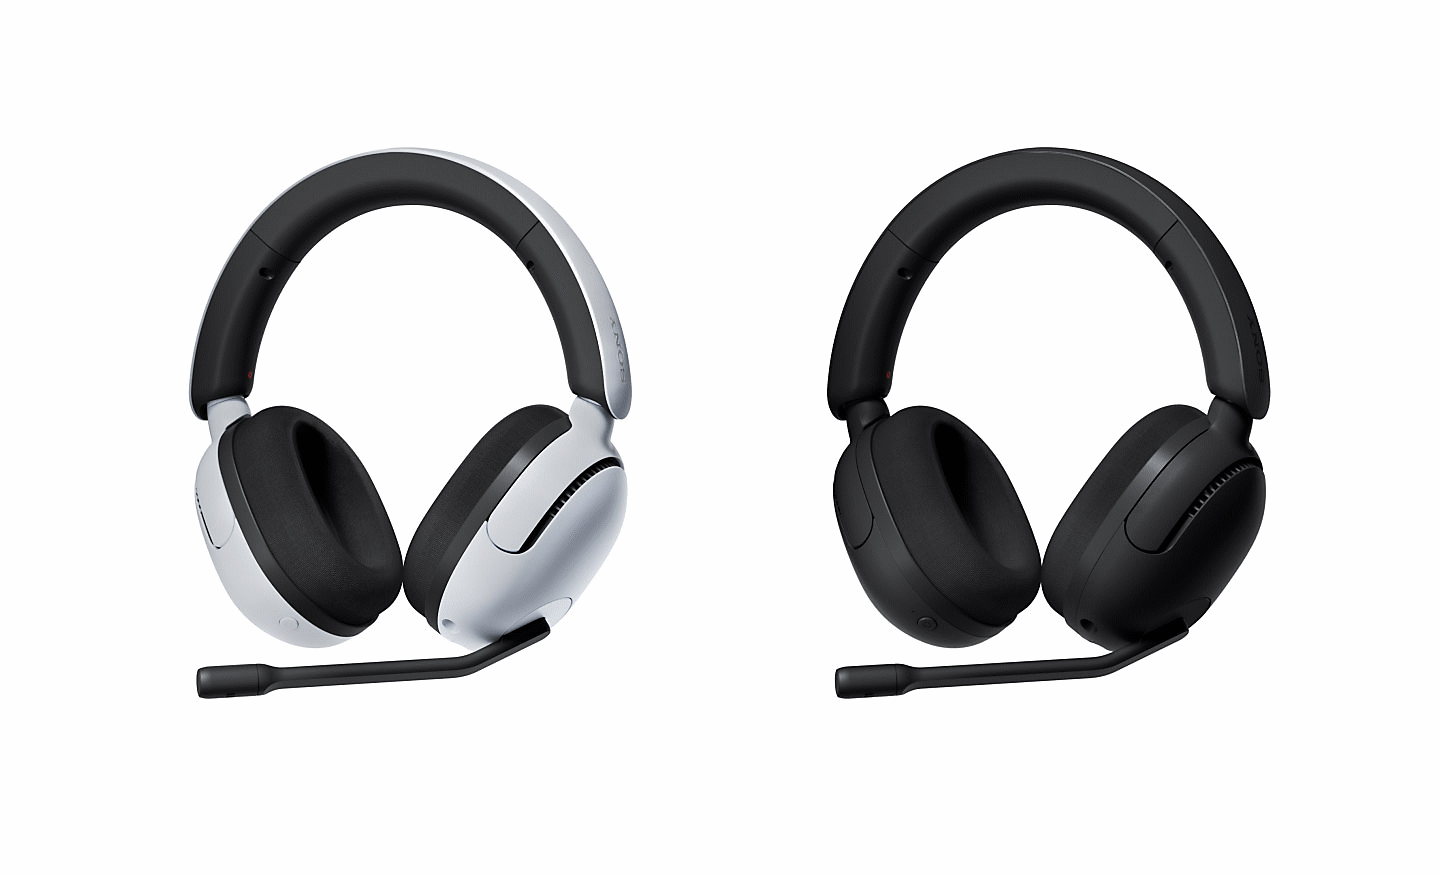 תמונה קדמית של שתי אוזניות INZONE H5, אחת בשחור ואחת בלבן